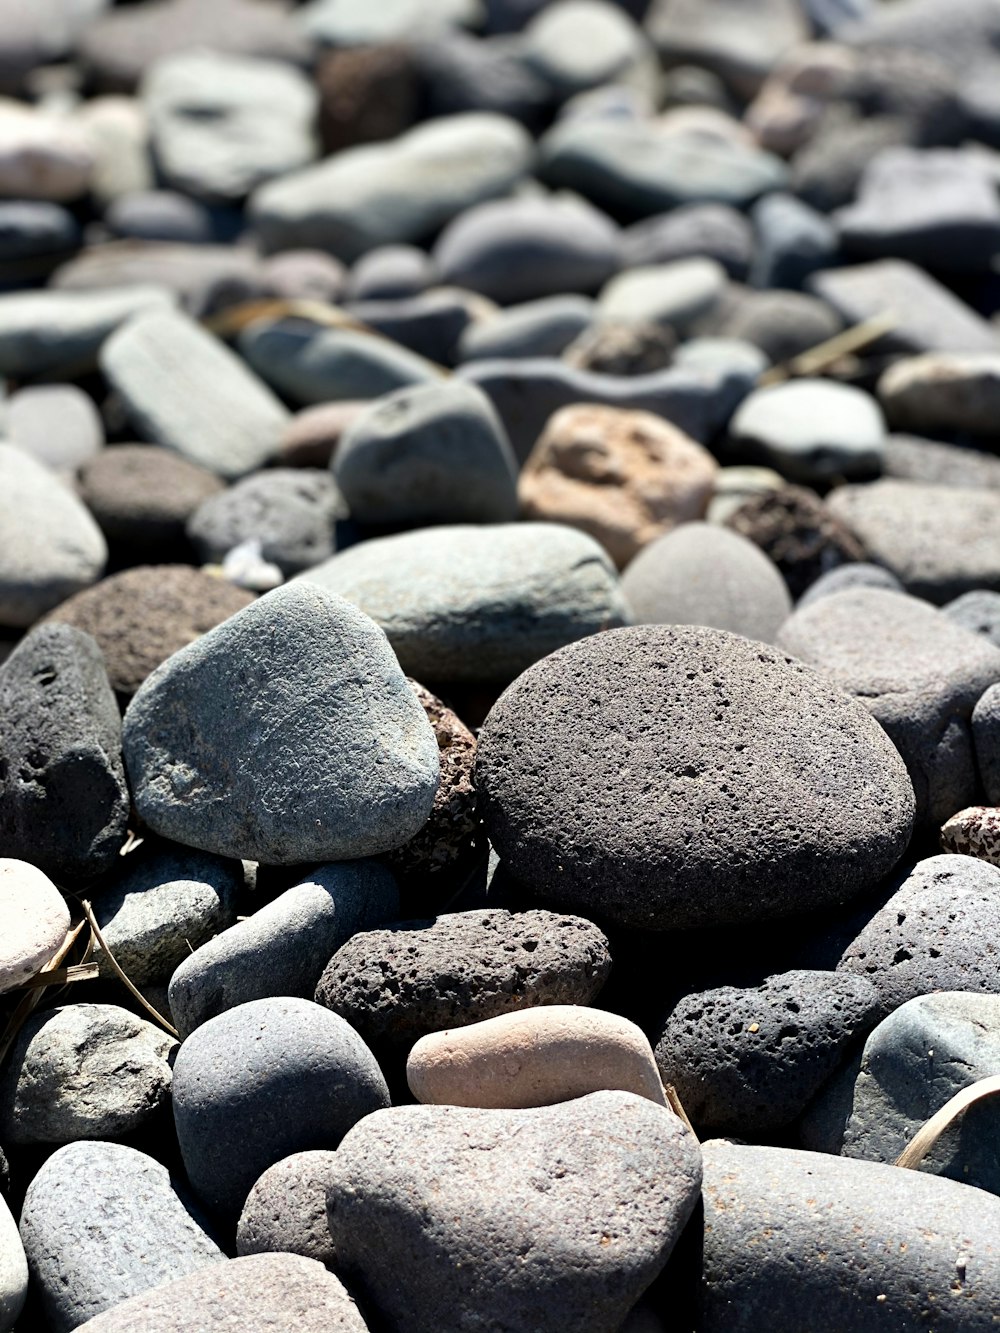 piedras grises y negras sobre piedras grises y blancas